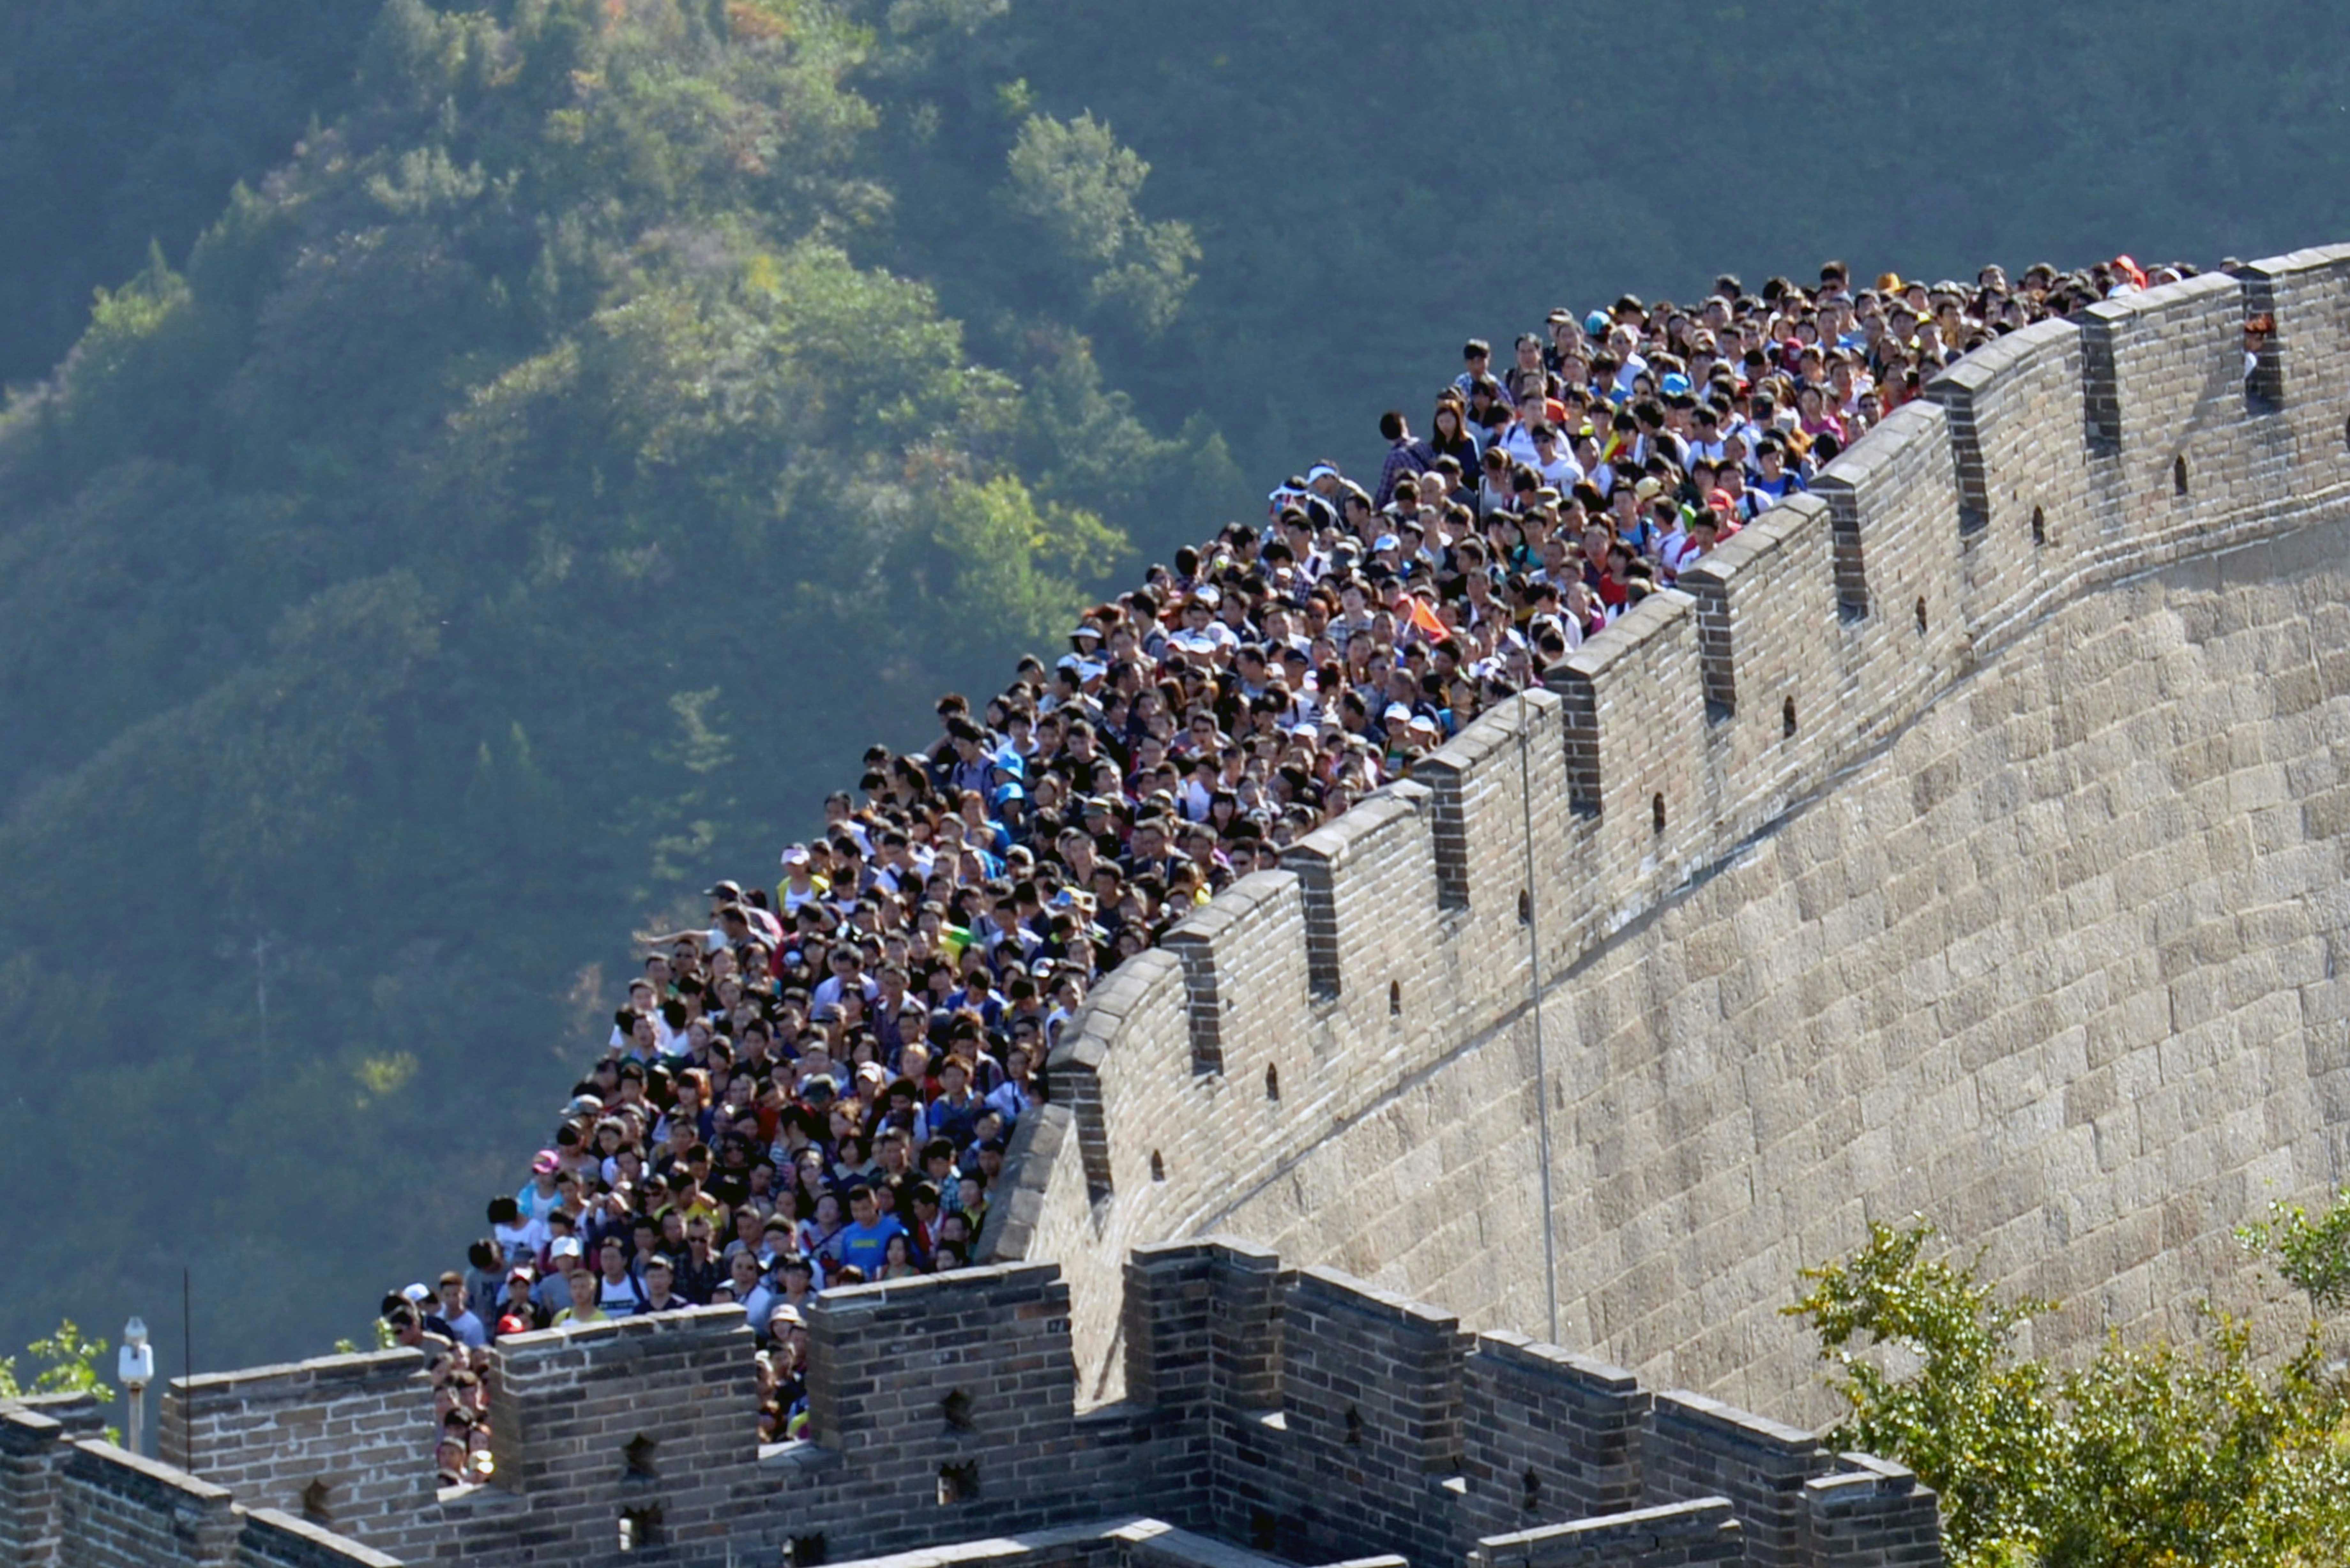 Великая стена россии. Великая китайская стена Бадалин. Великая китайская стена туристы. Бадалин Пекин. Великая китайская стена цинхай.